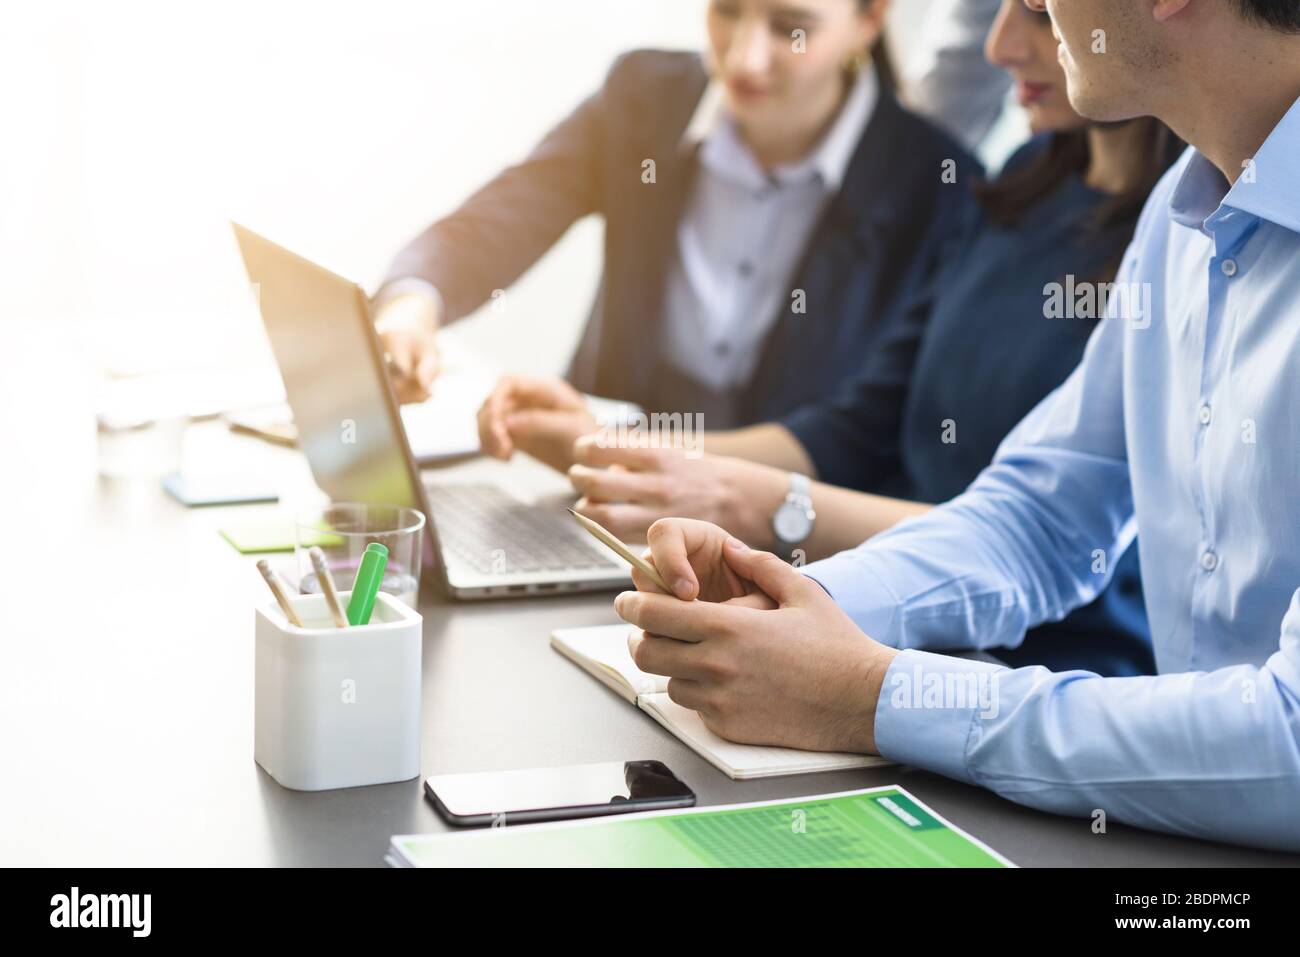 Équipe professionnelle travaillant ensemble, ils sont assis au bureau et utilisent un ordinateur portable, un travail d'équipe et un concept technologique Banque D'Images